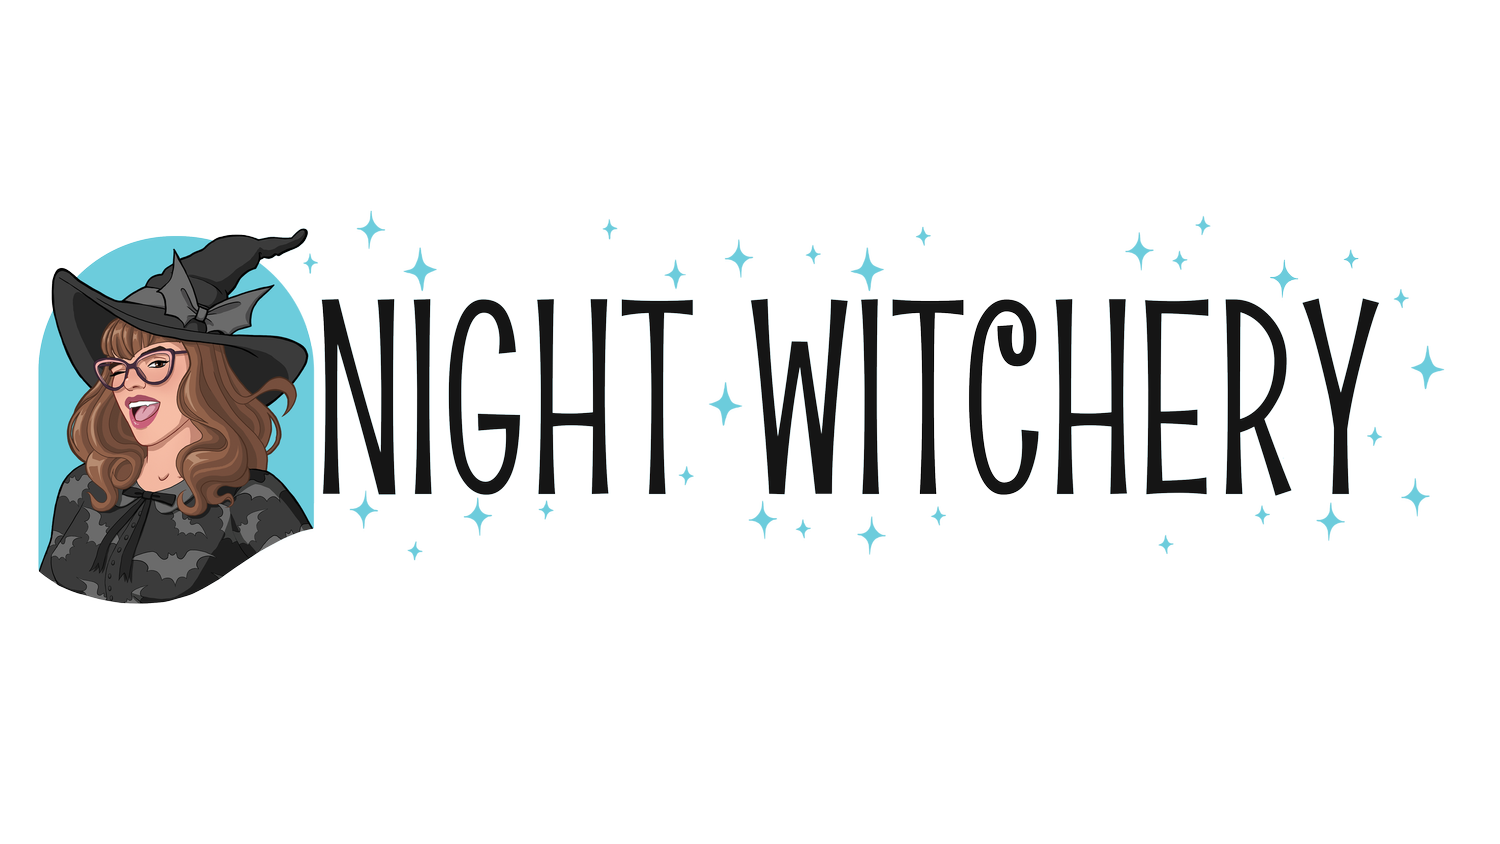 NIGHT WITCHERY